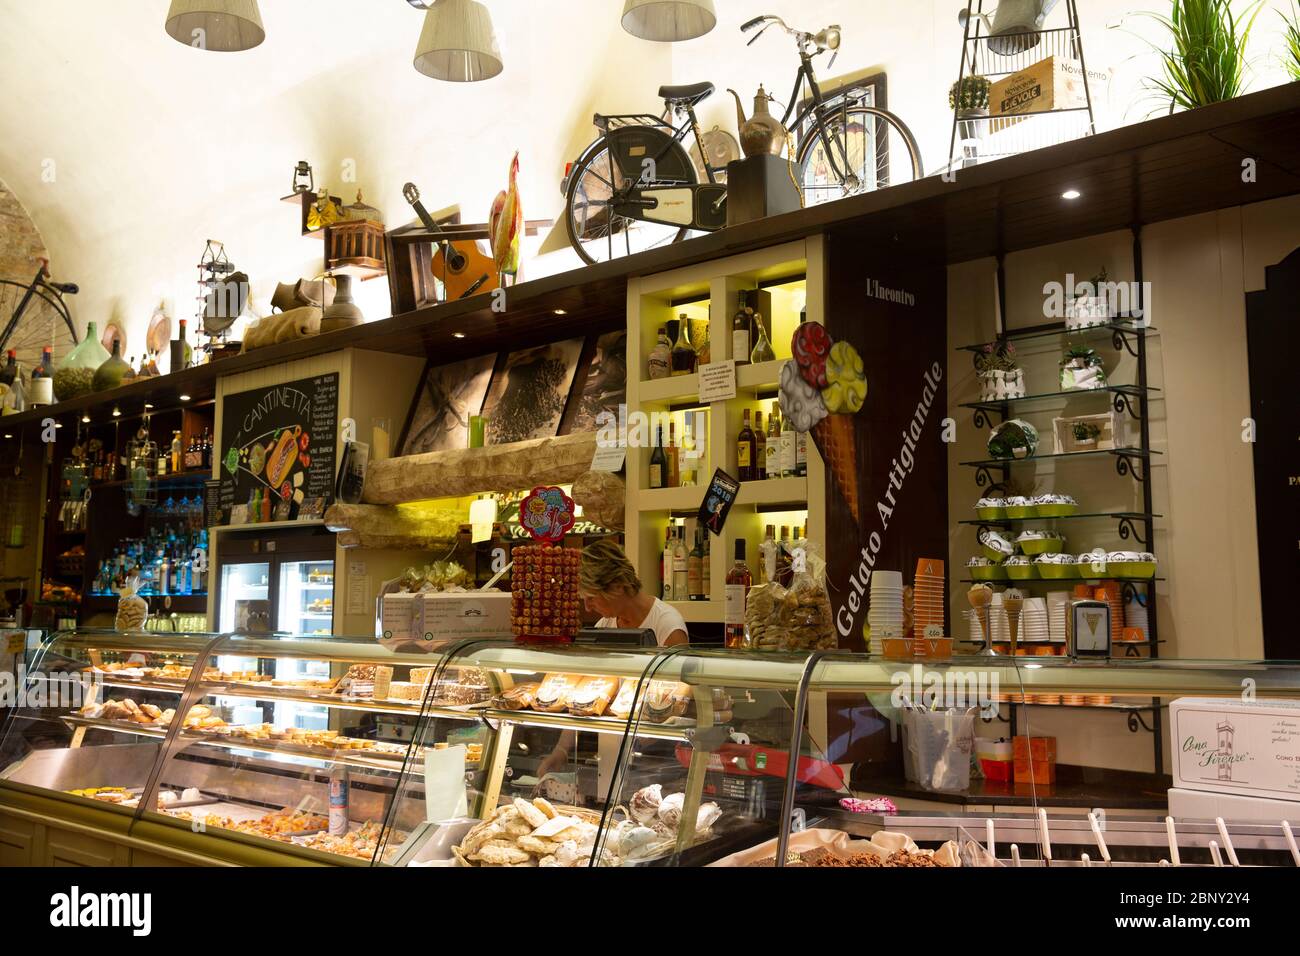 Tradizionale caffè italiano interno nella città medievale di Volterra con gelato e torta in essere servita, Toscana, Italia Foto Stock